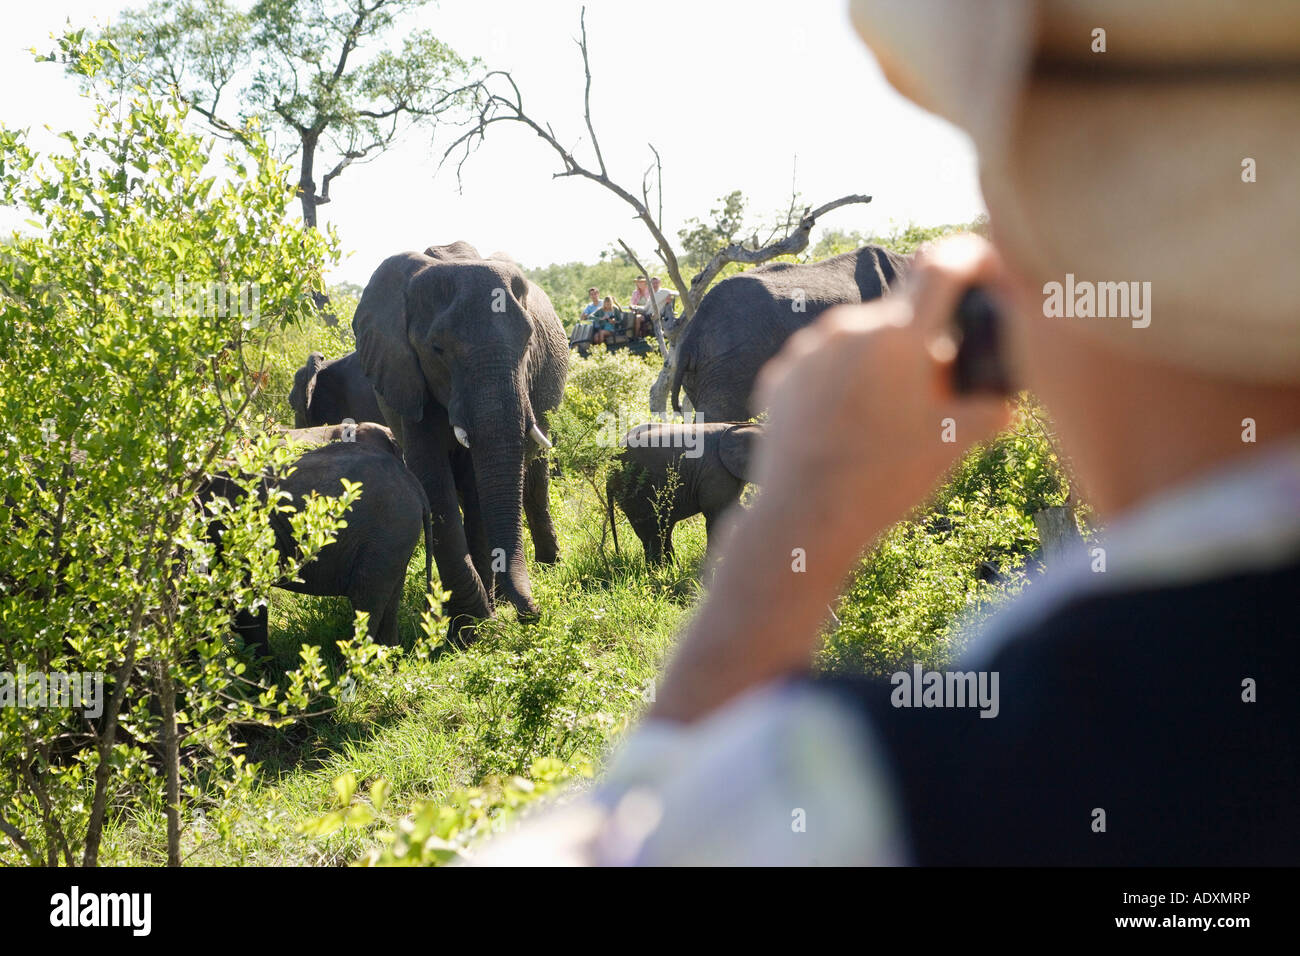 Hot man taking photo de groupe d'éléphants, vue arrière Banque D'Images